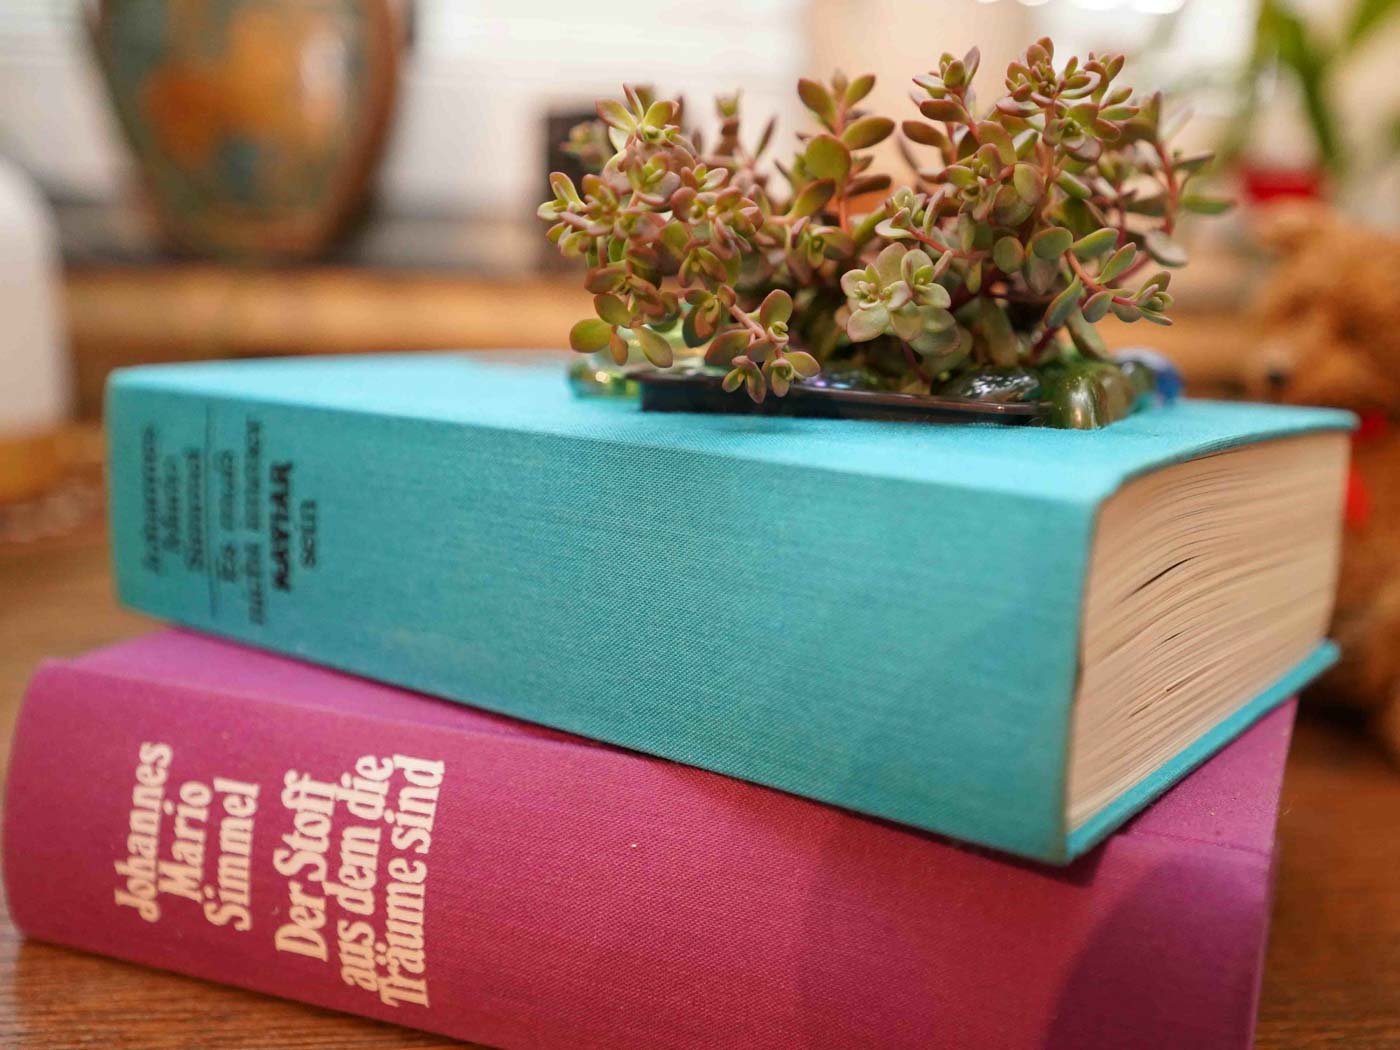 Aus einem Stapel mit 2 dicken Büchern wurde in Else’s Kreativwerkstatt ein Pflanzgefäß hergestellt.